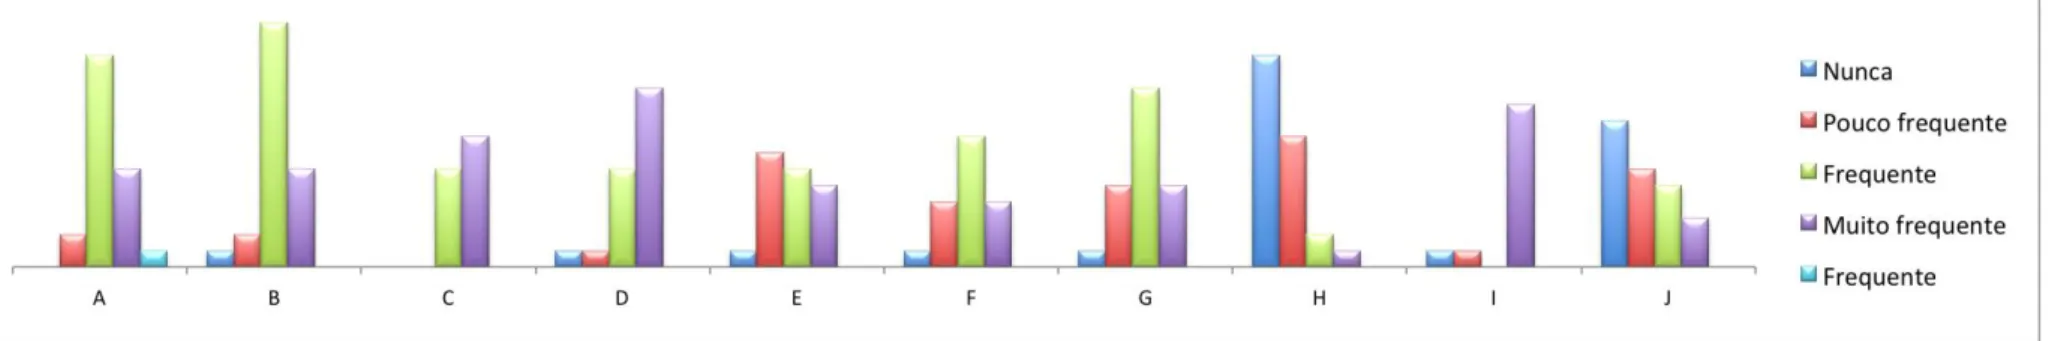 Figura 6. Relação entre o número de alunos da turma e o tipo de utilização que fazem do computador